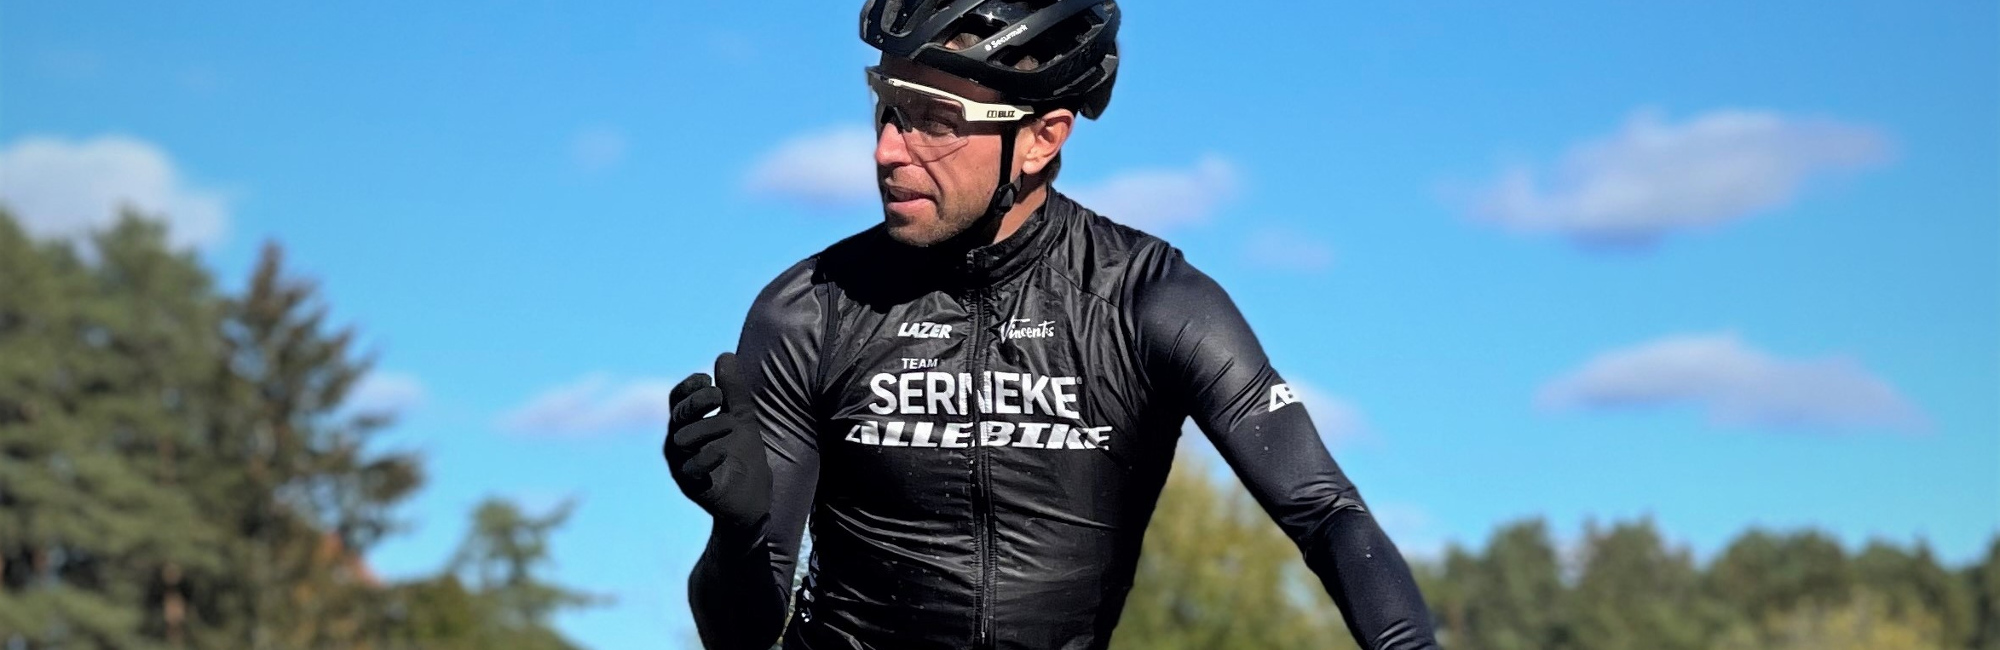 MTB-cyklisten Emil Lindgren från Team Serneke-Allebike i cykelkläder, cykelglasögon och Lazer cykelhjälm på en vit cykel med blå himmel som bakgrund.